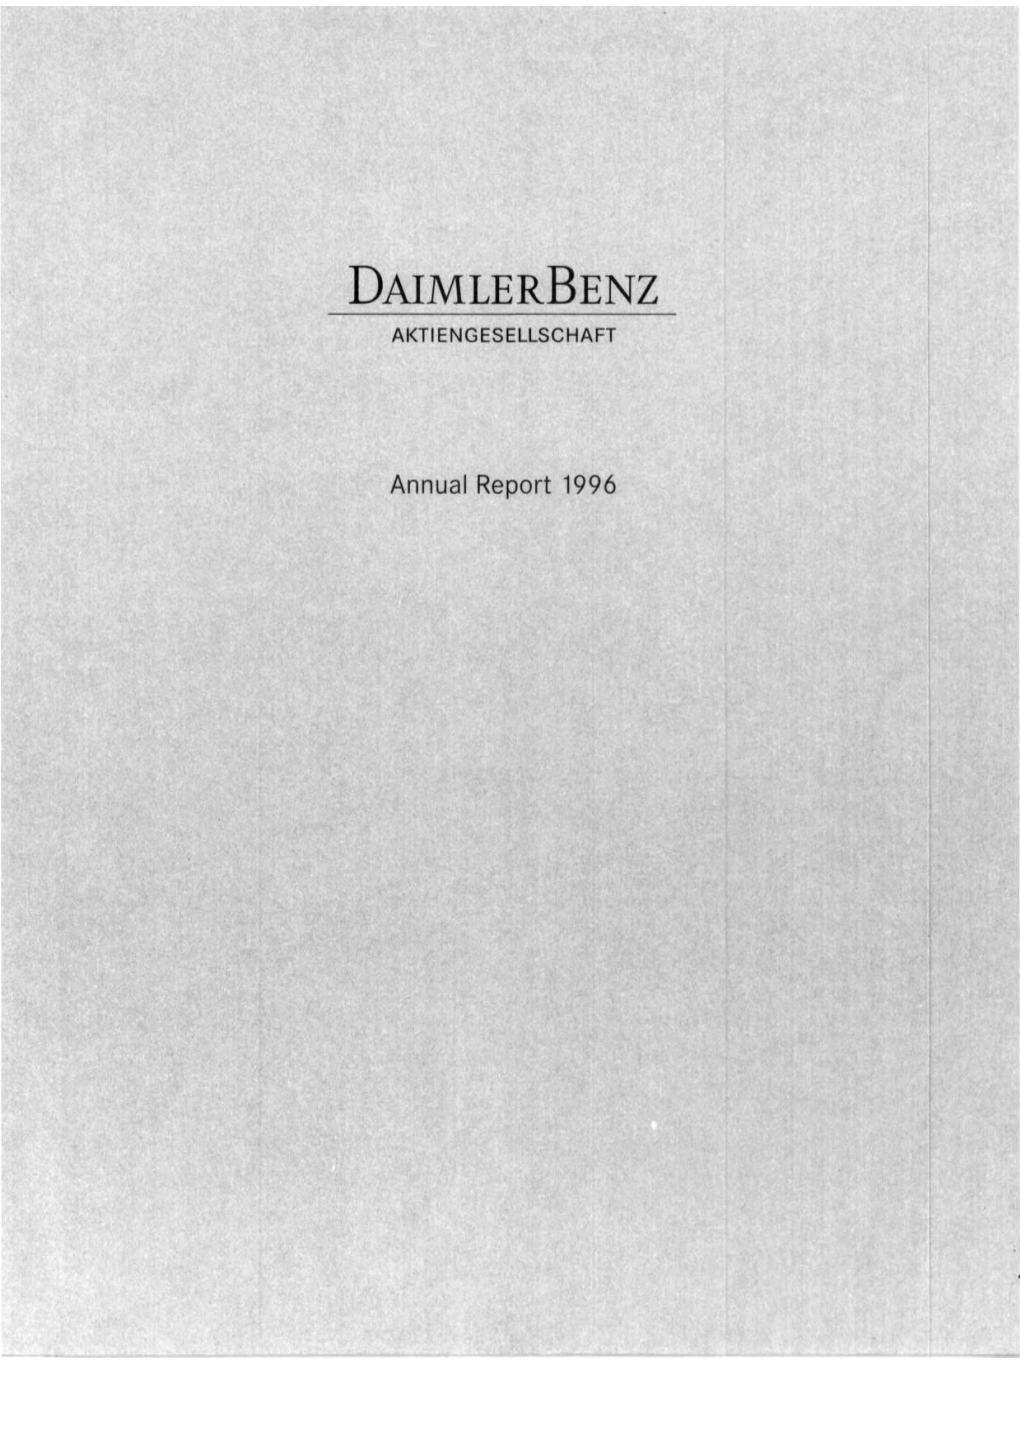 Daimler-Benz Annual Report 1996